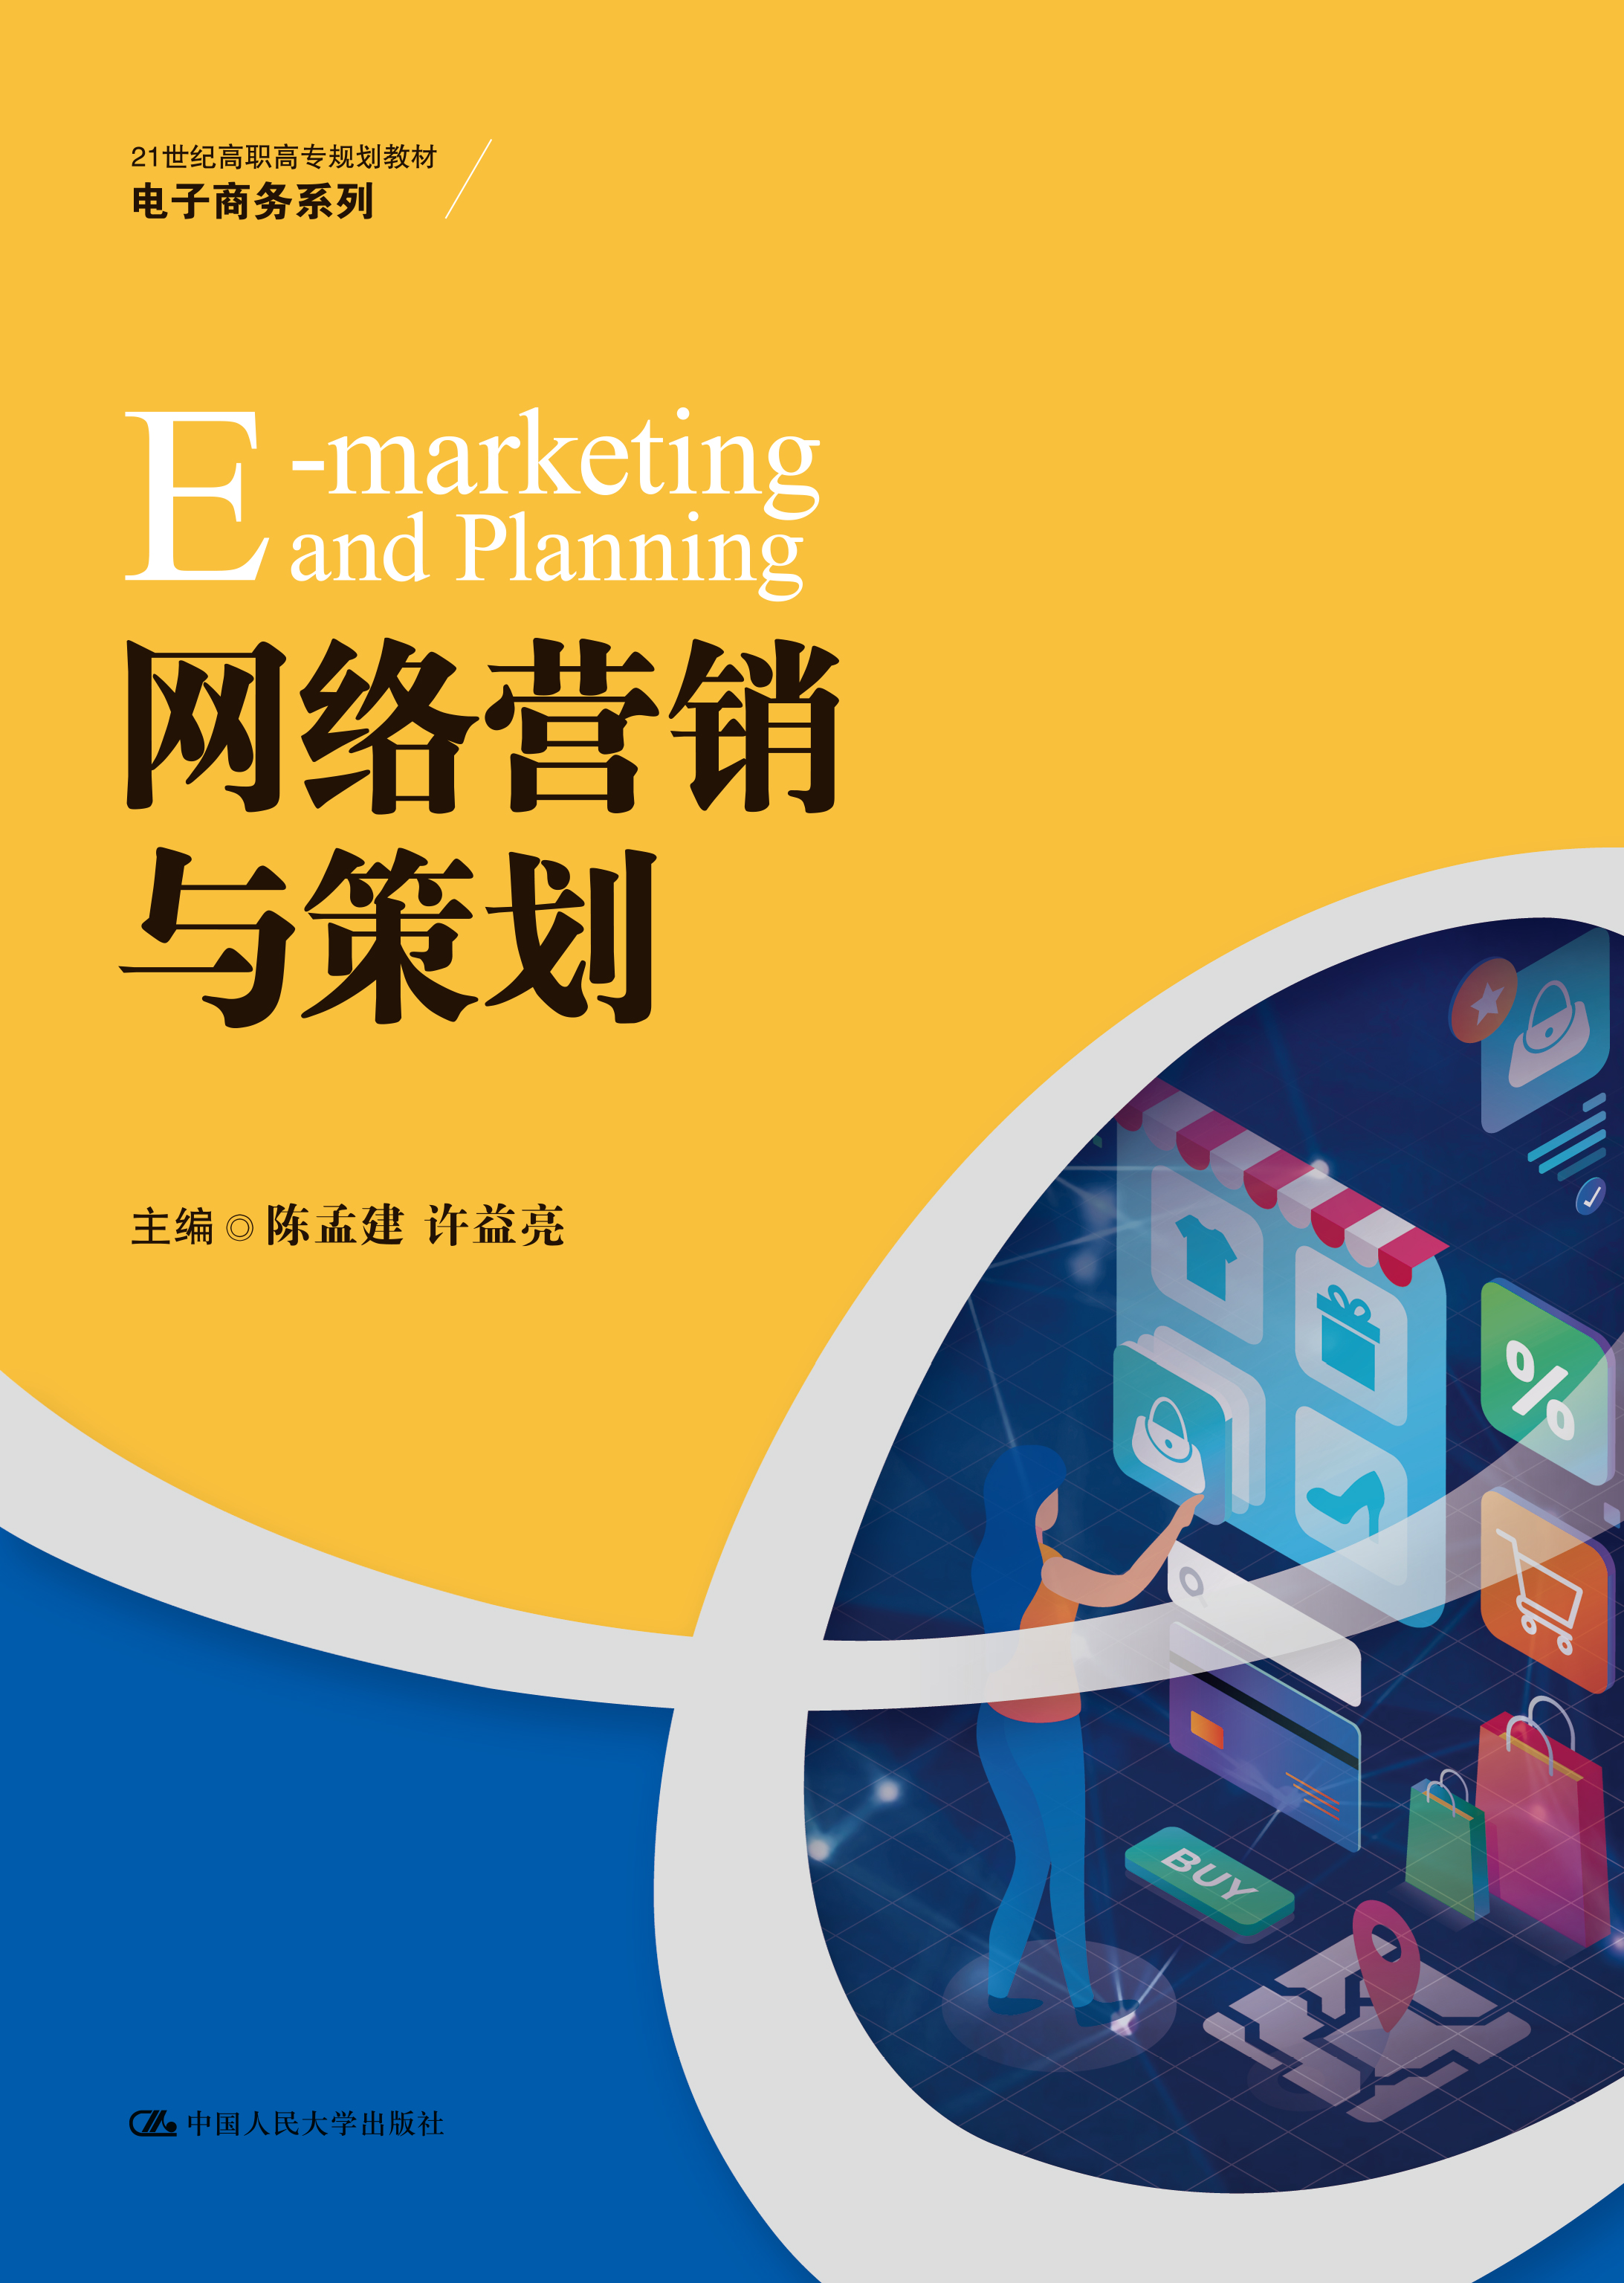 中国网络营销(中国网络营销的发展经历了哪几个阶段)